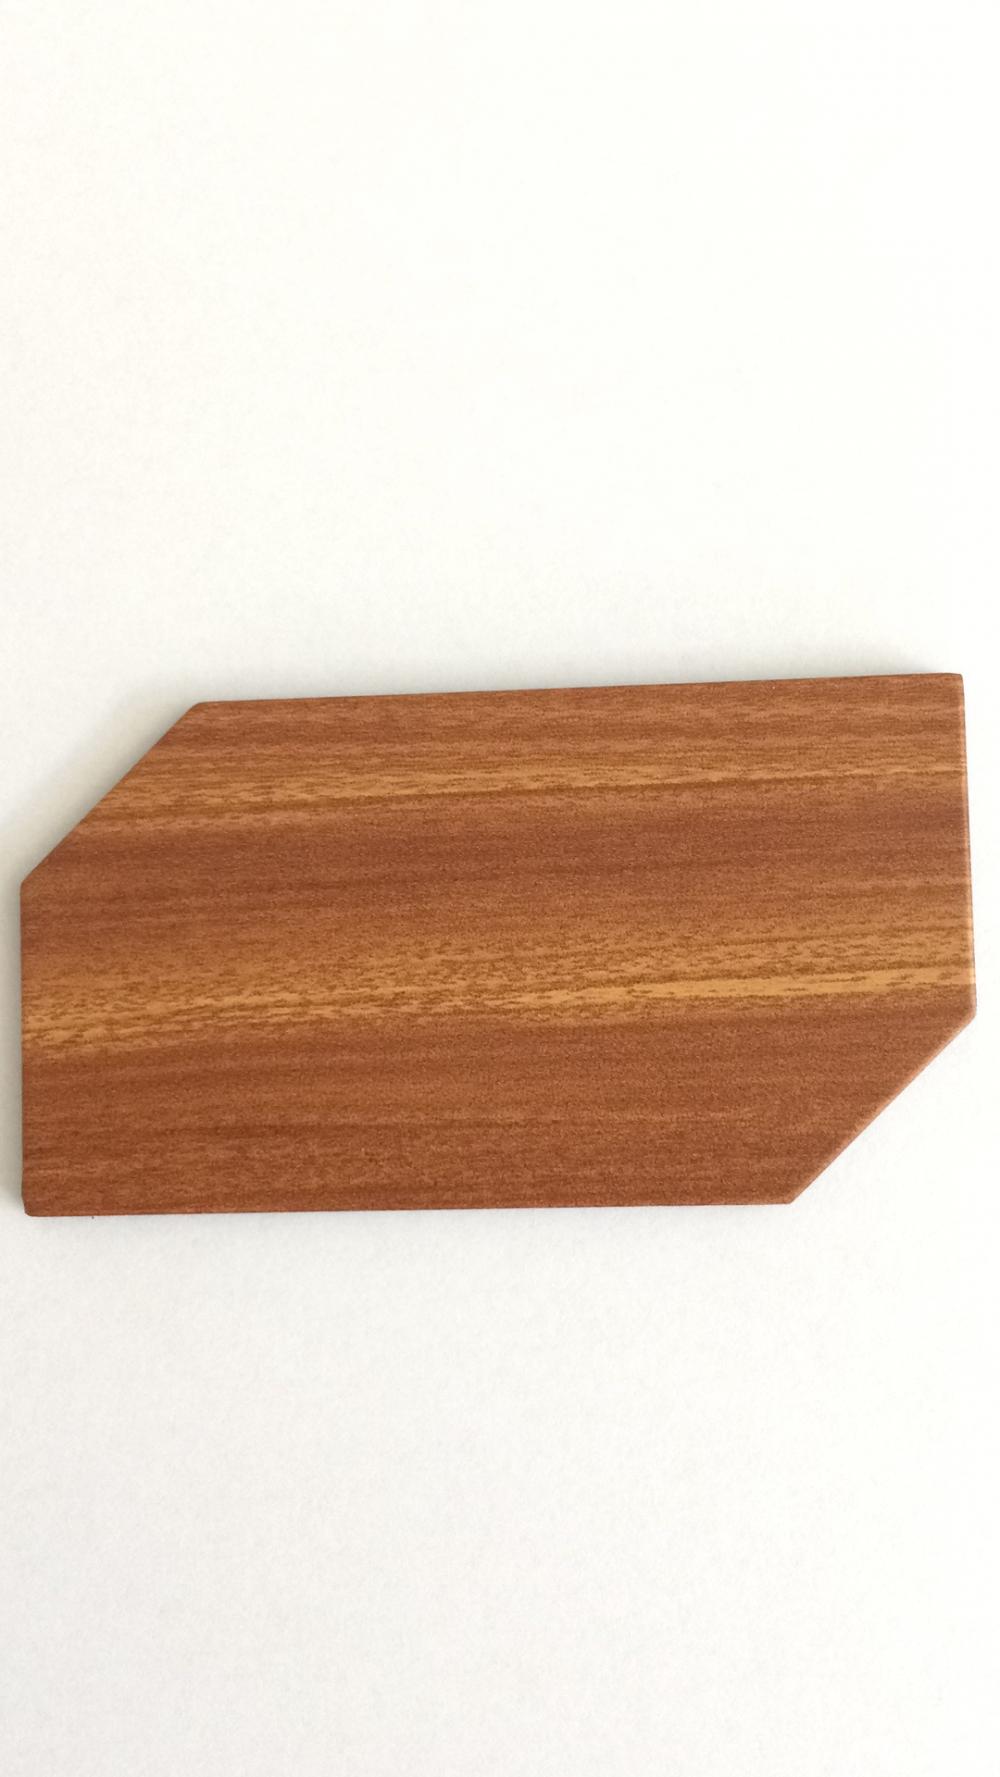 Placa de identificación de madera imitación bien hecha